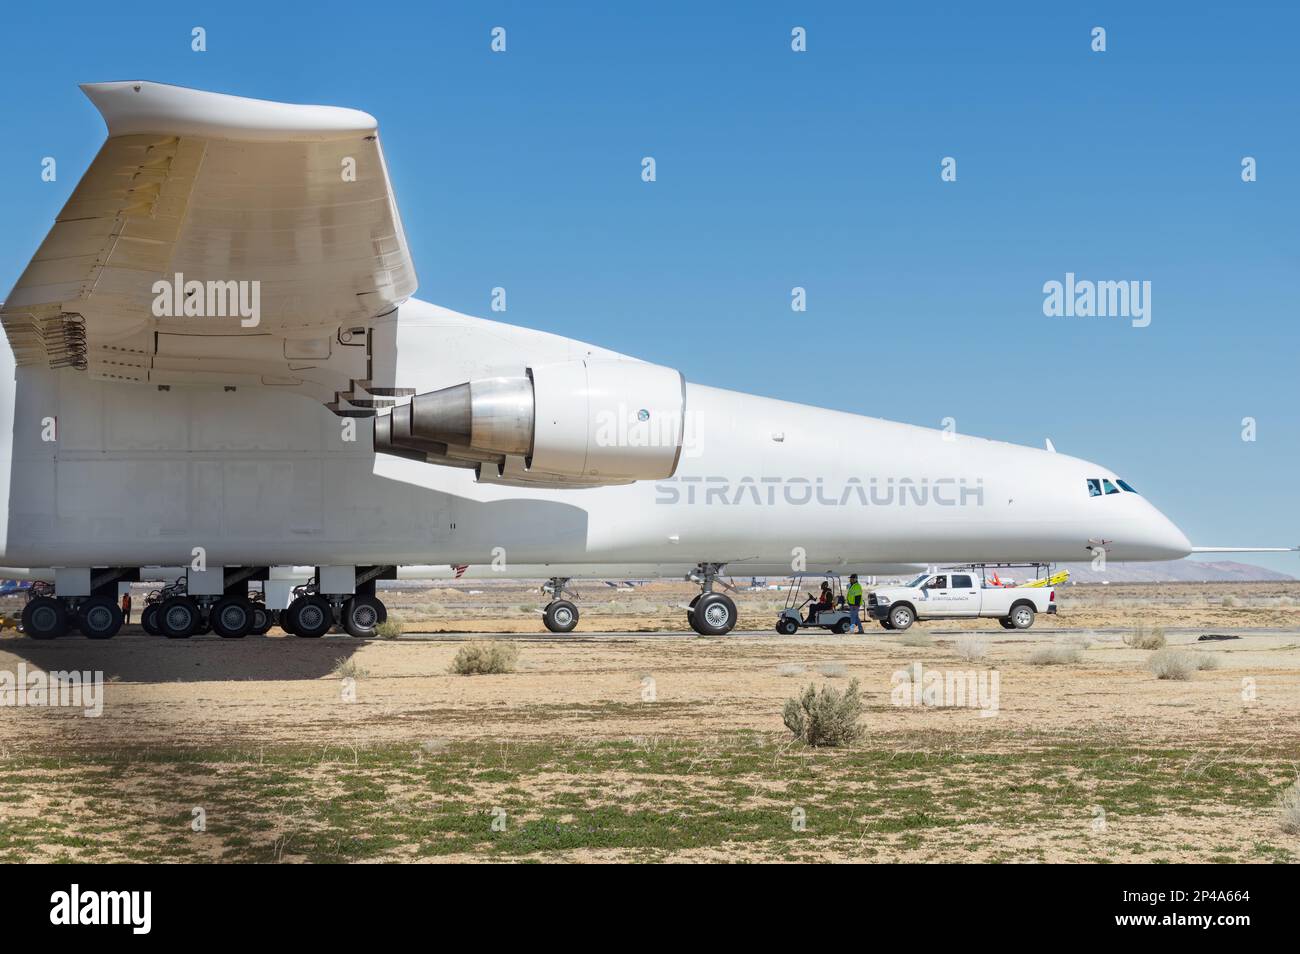 L'avion Stratolaunch montrait du roulage. Il est considéré comme le plus grand avion du monde. Banque D'Images